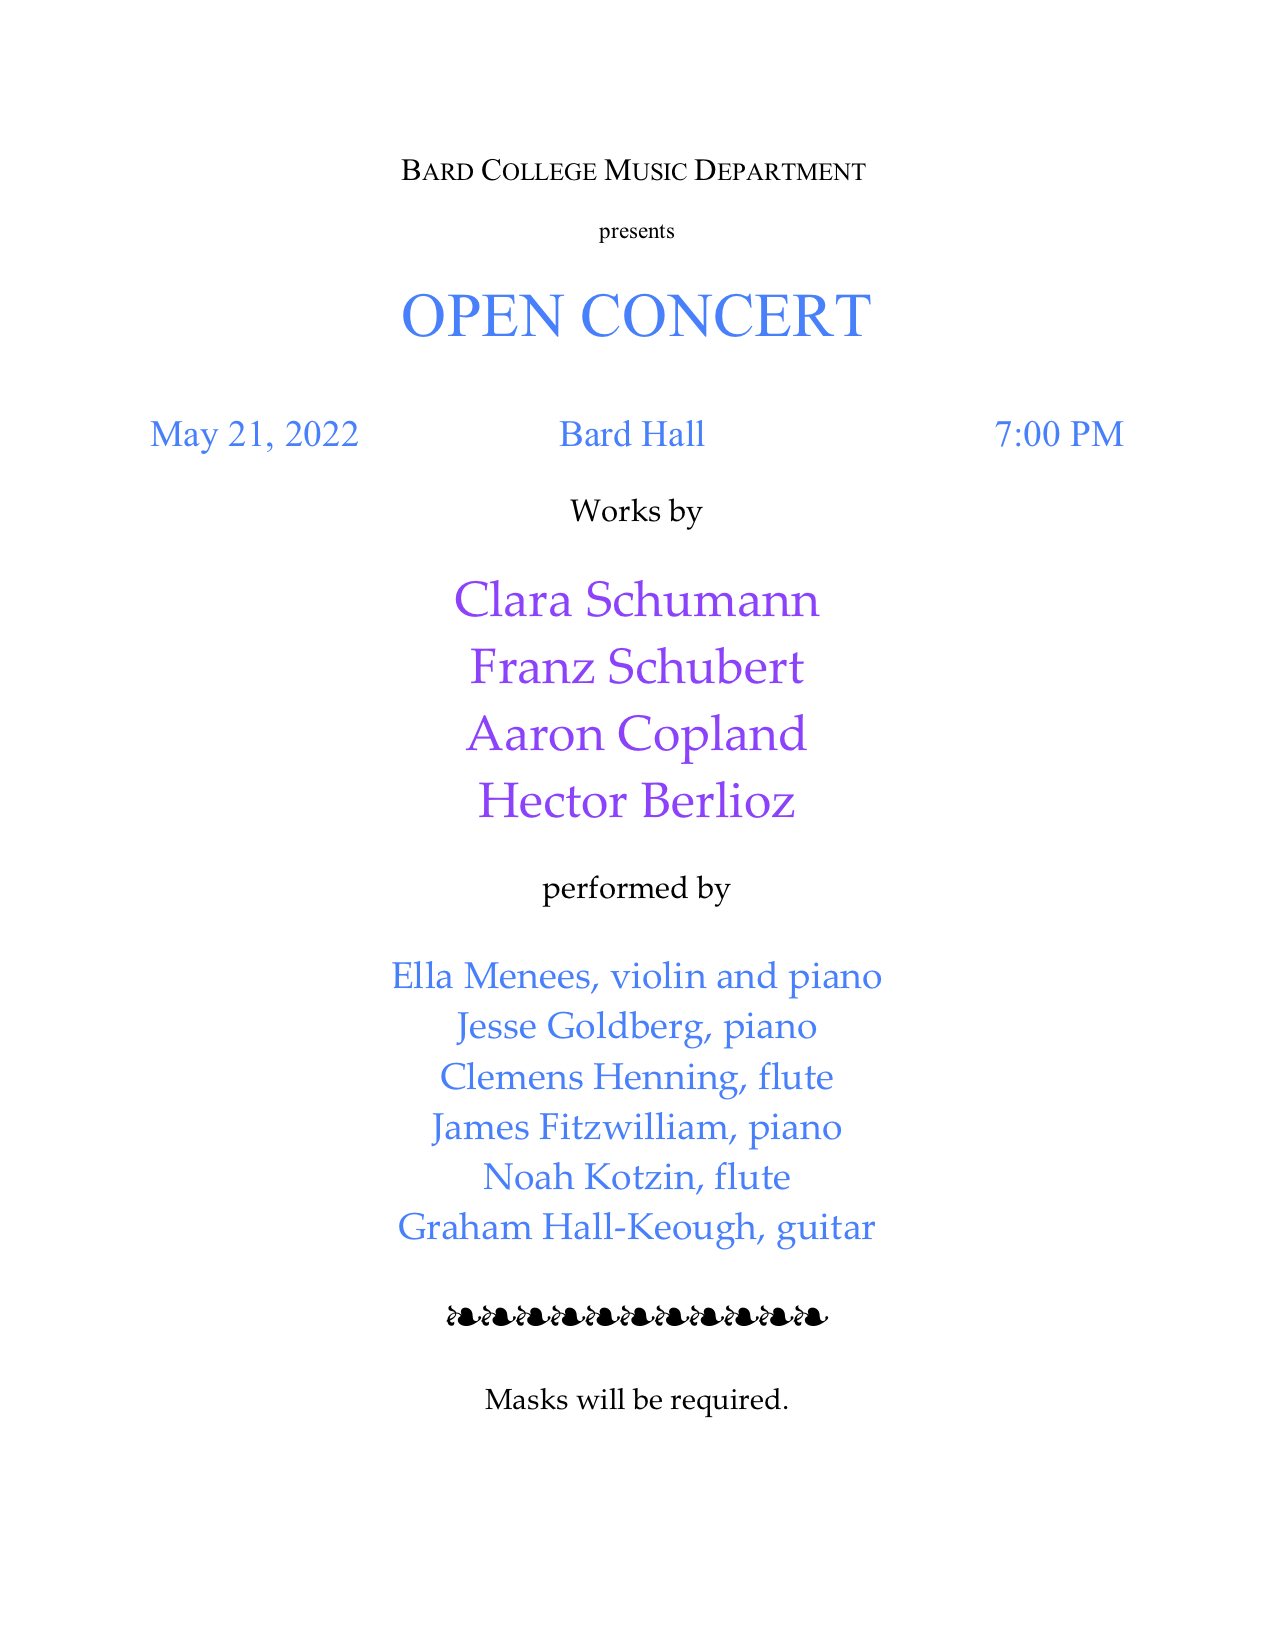 Open Concert